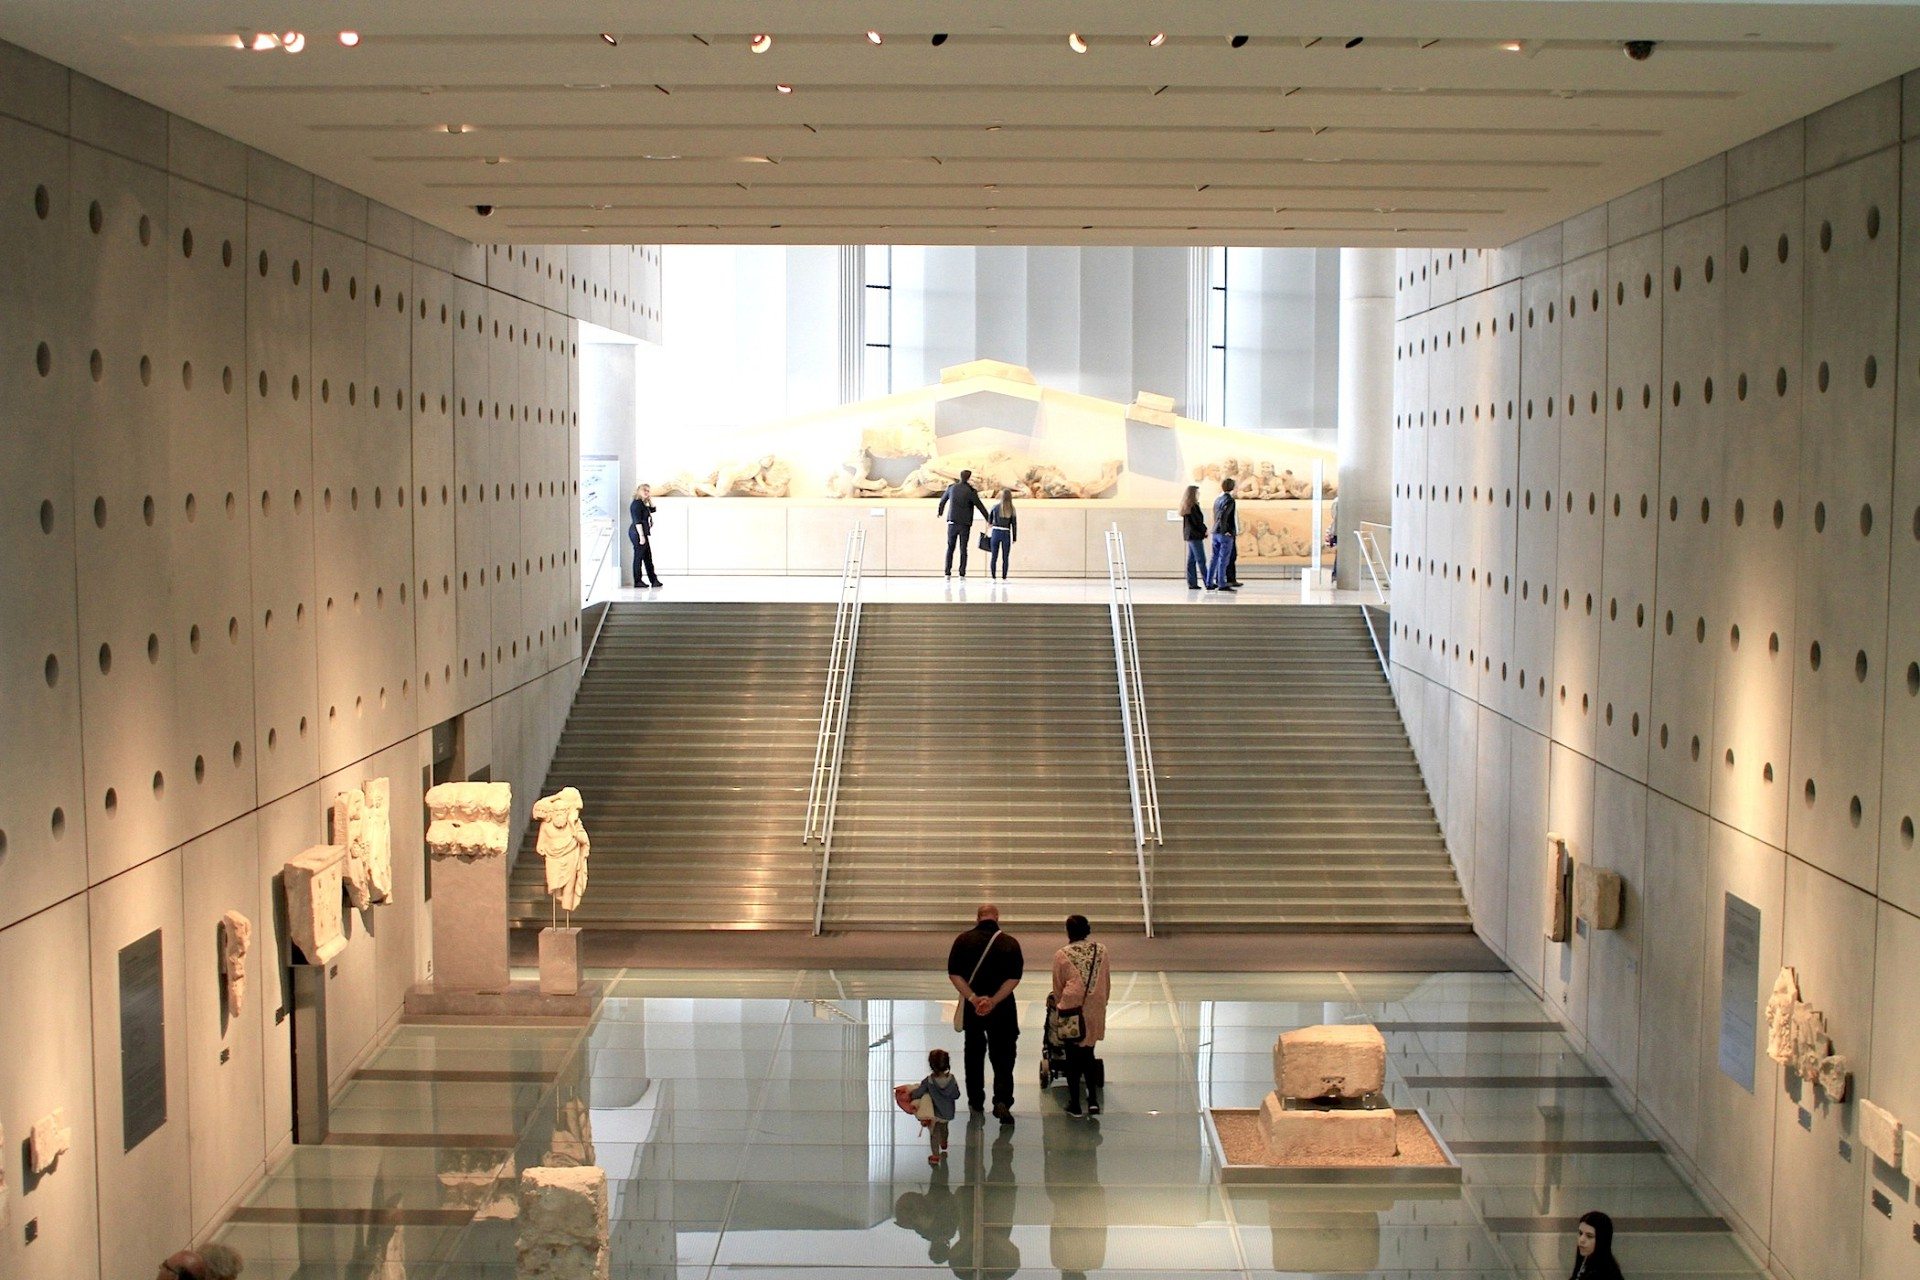 Aufsteigend. Eine gläserne Rampe und marmorne Freitreppe führt in den oberen Ausstellungssaal. Der Rundgang soll an den beschwerlichen Aufstieg auf den Tempelberg erinnern. Dieses Gefühl wird durch den Wechsel der Raumhöhe von fünf Metern auf das Dreifache verstärkt.